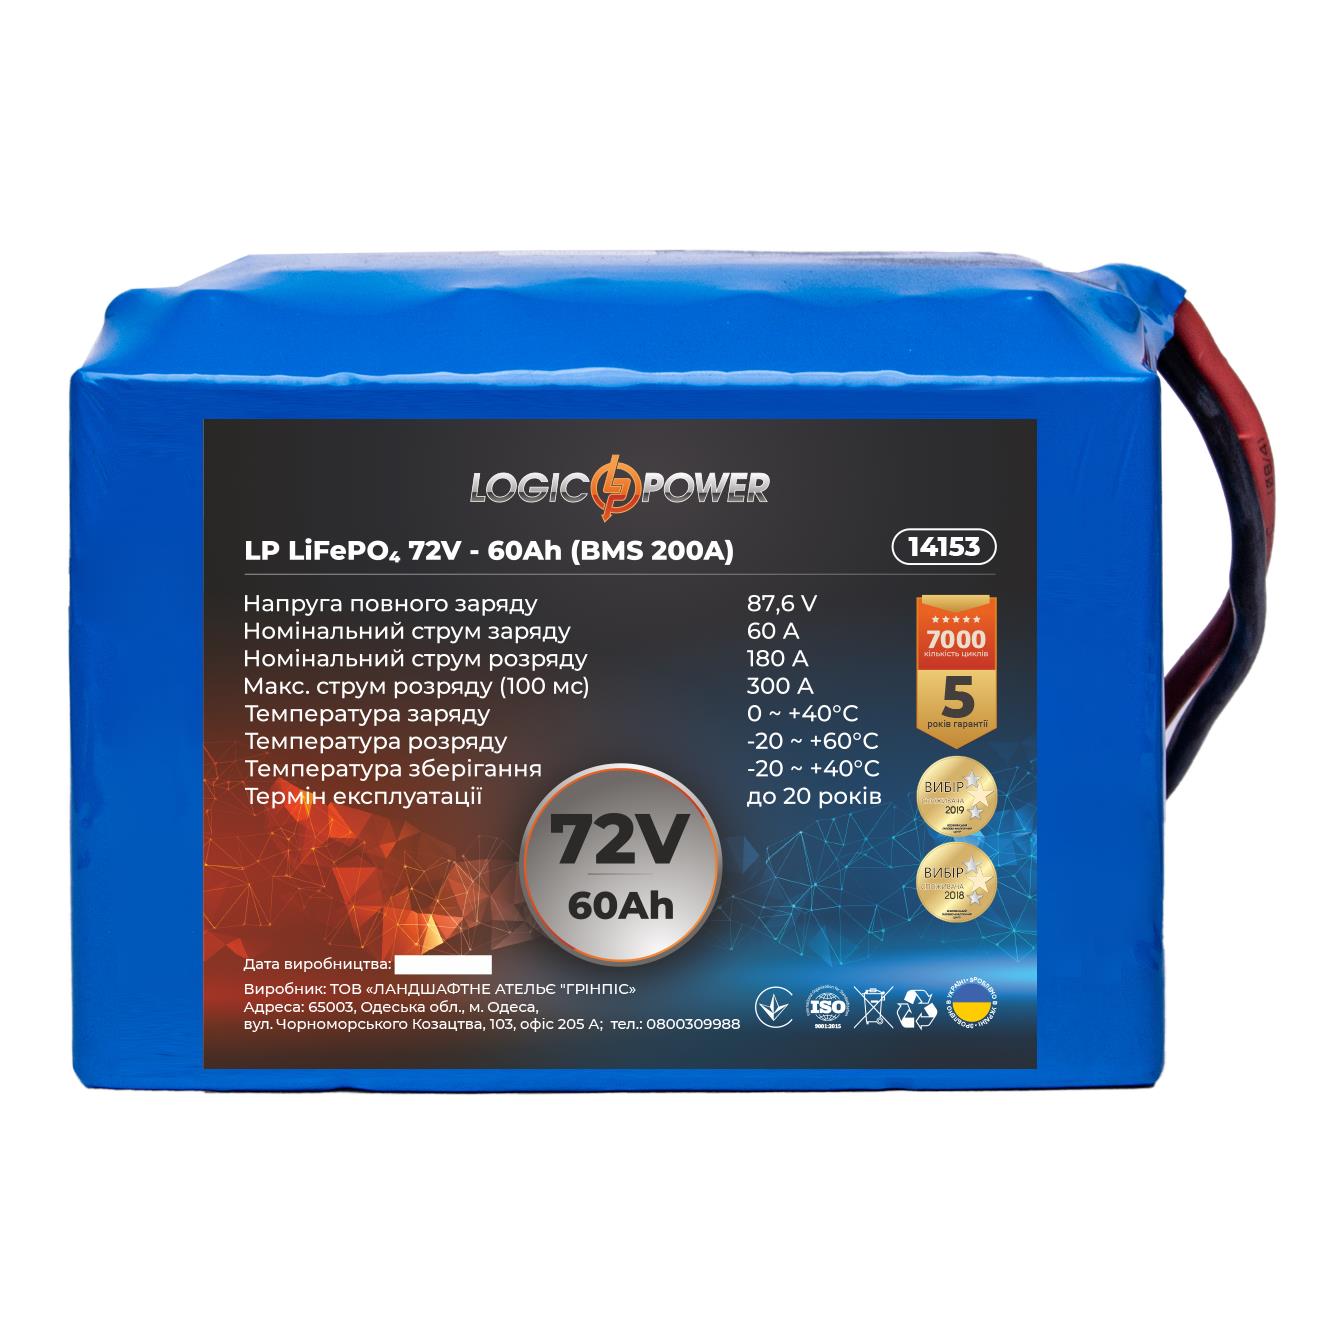 Аккумулятор литий-железо-фосфатный LogicPower LP LiFePO4 72V - 60 Ah (BMS 200A) (14153)